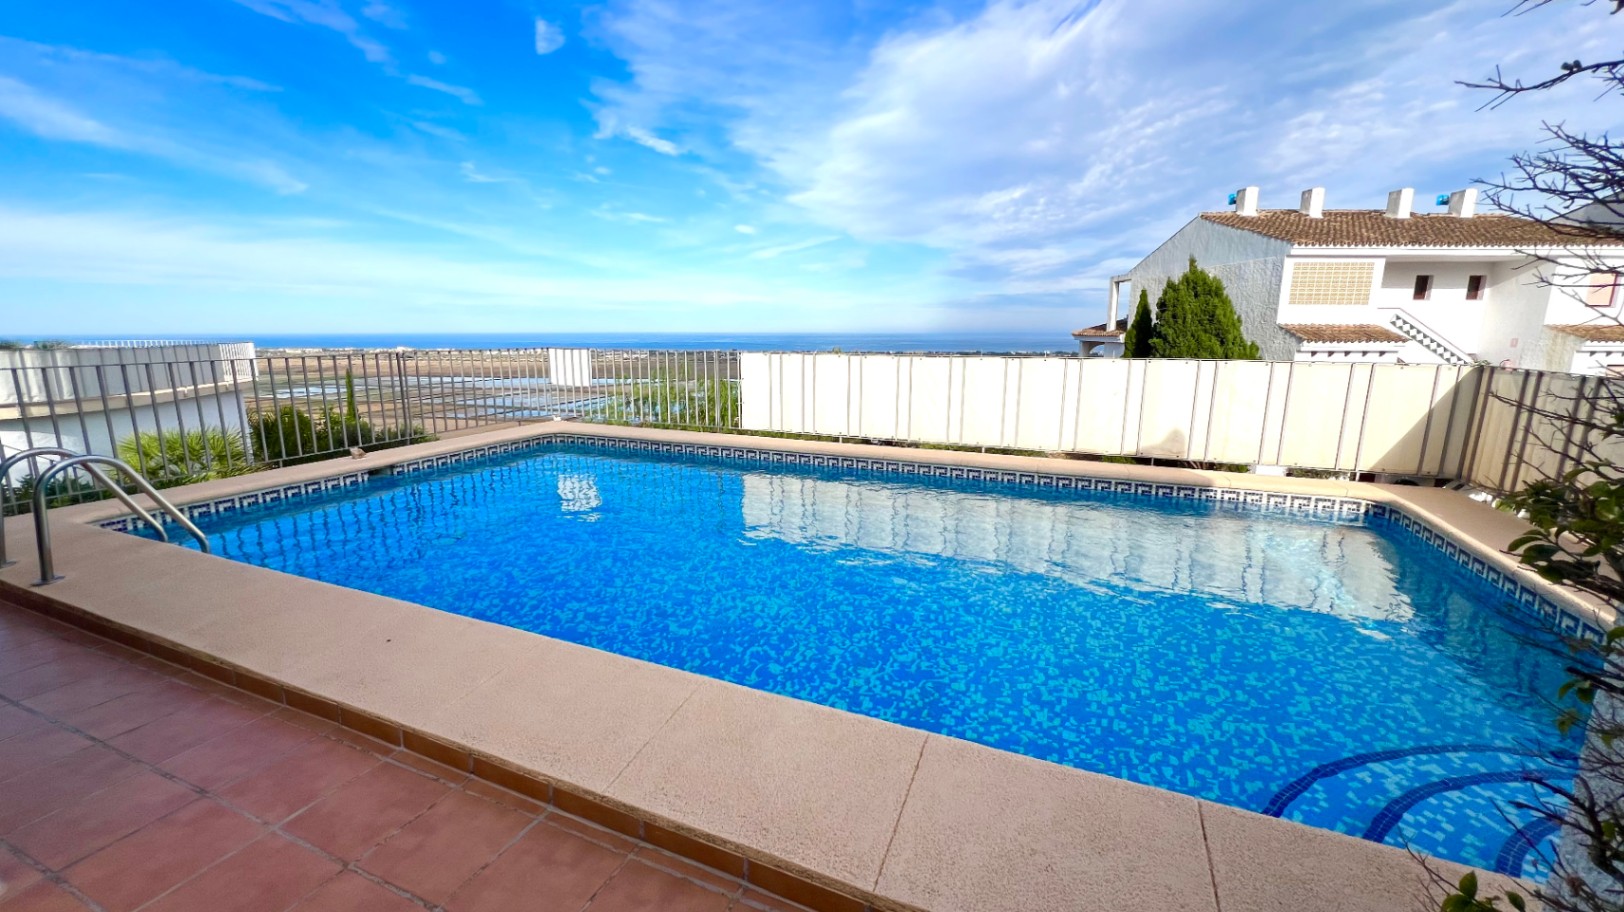 Belle villa de 2 chambres avec vue sur la mer, piscine, chauffage central, abri voiture, et bien plus encore.